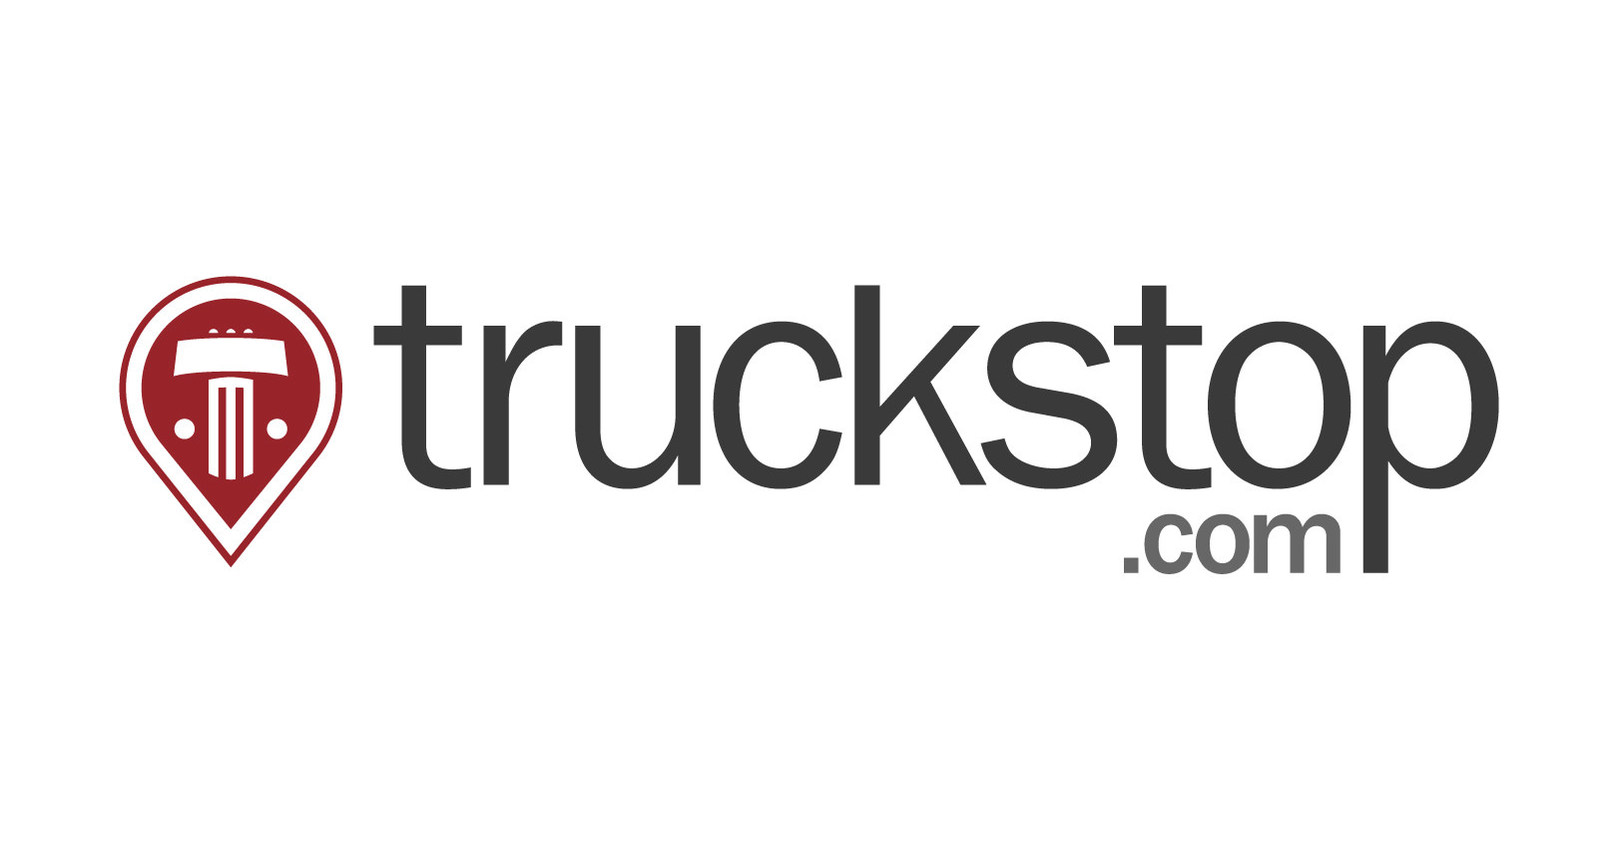 Truckstop.com logo